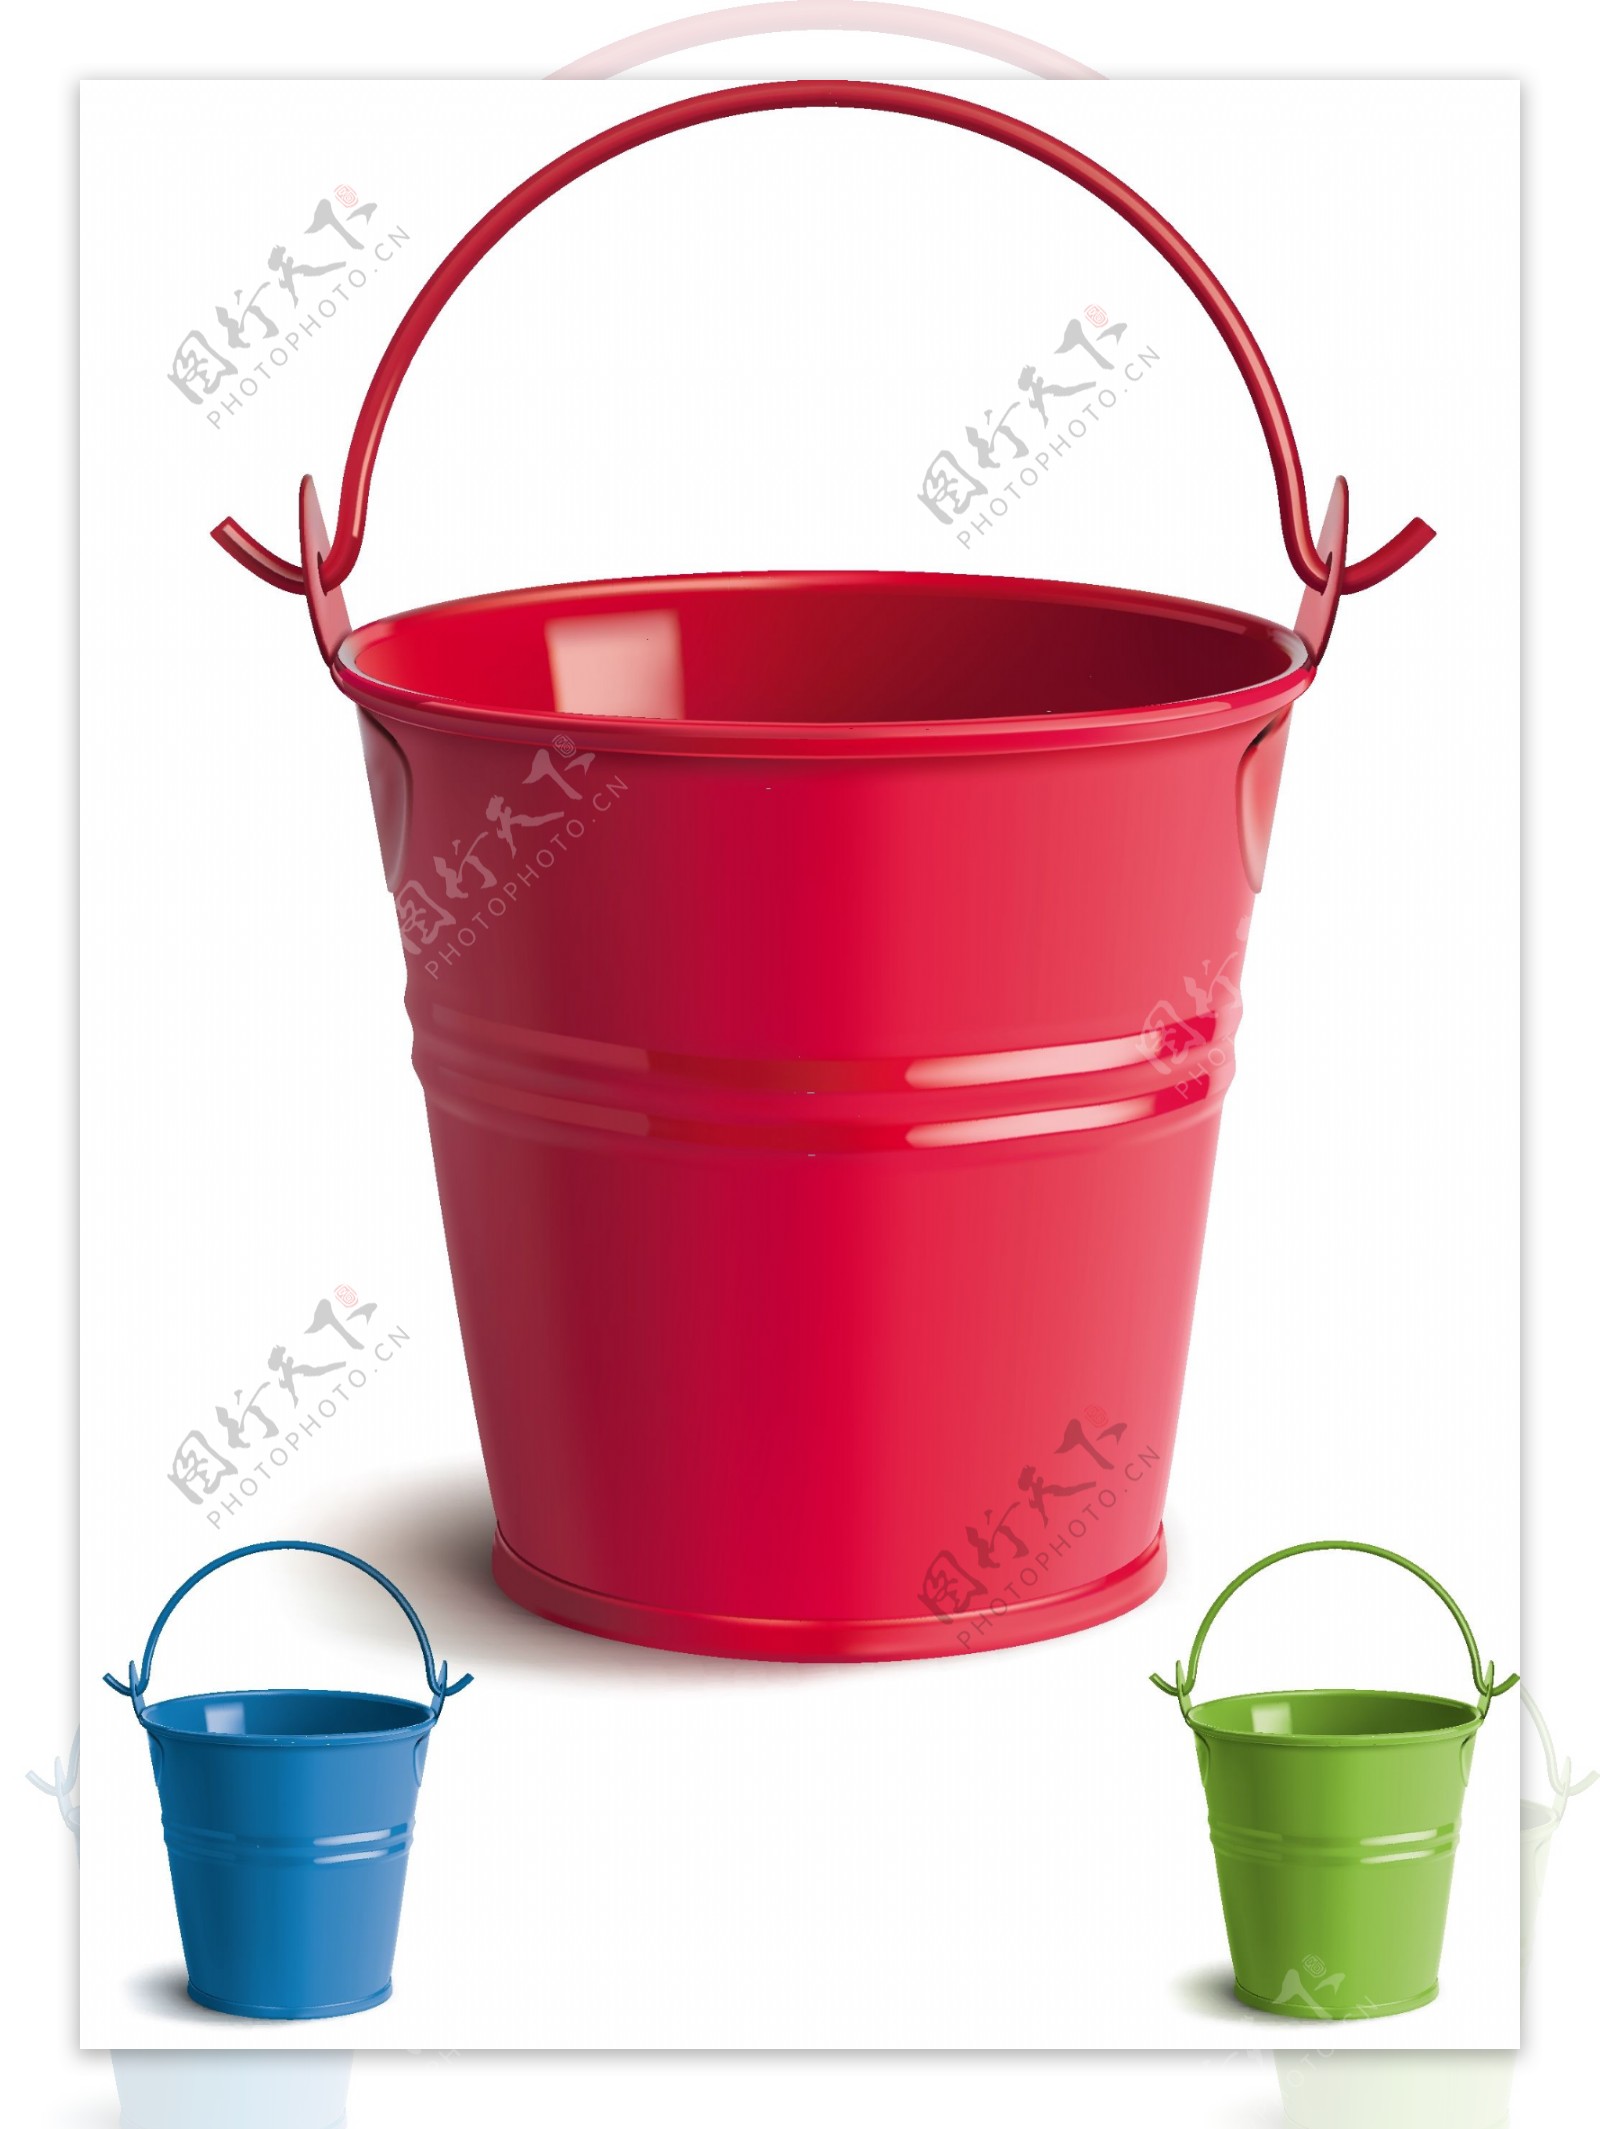 三款彩色铁桶水桶矢量